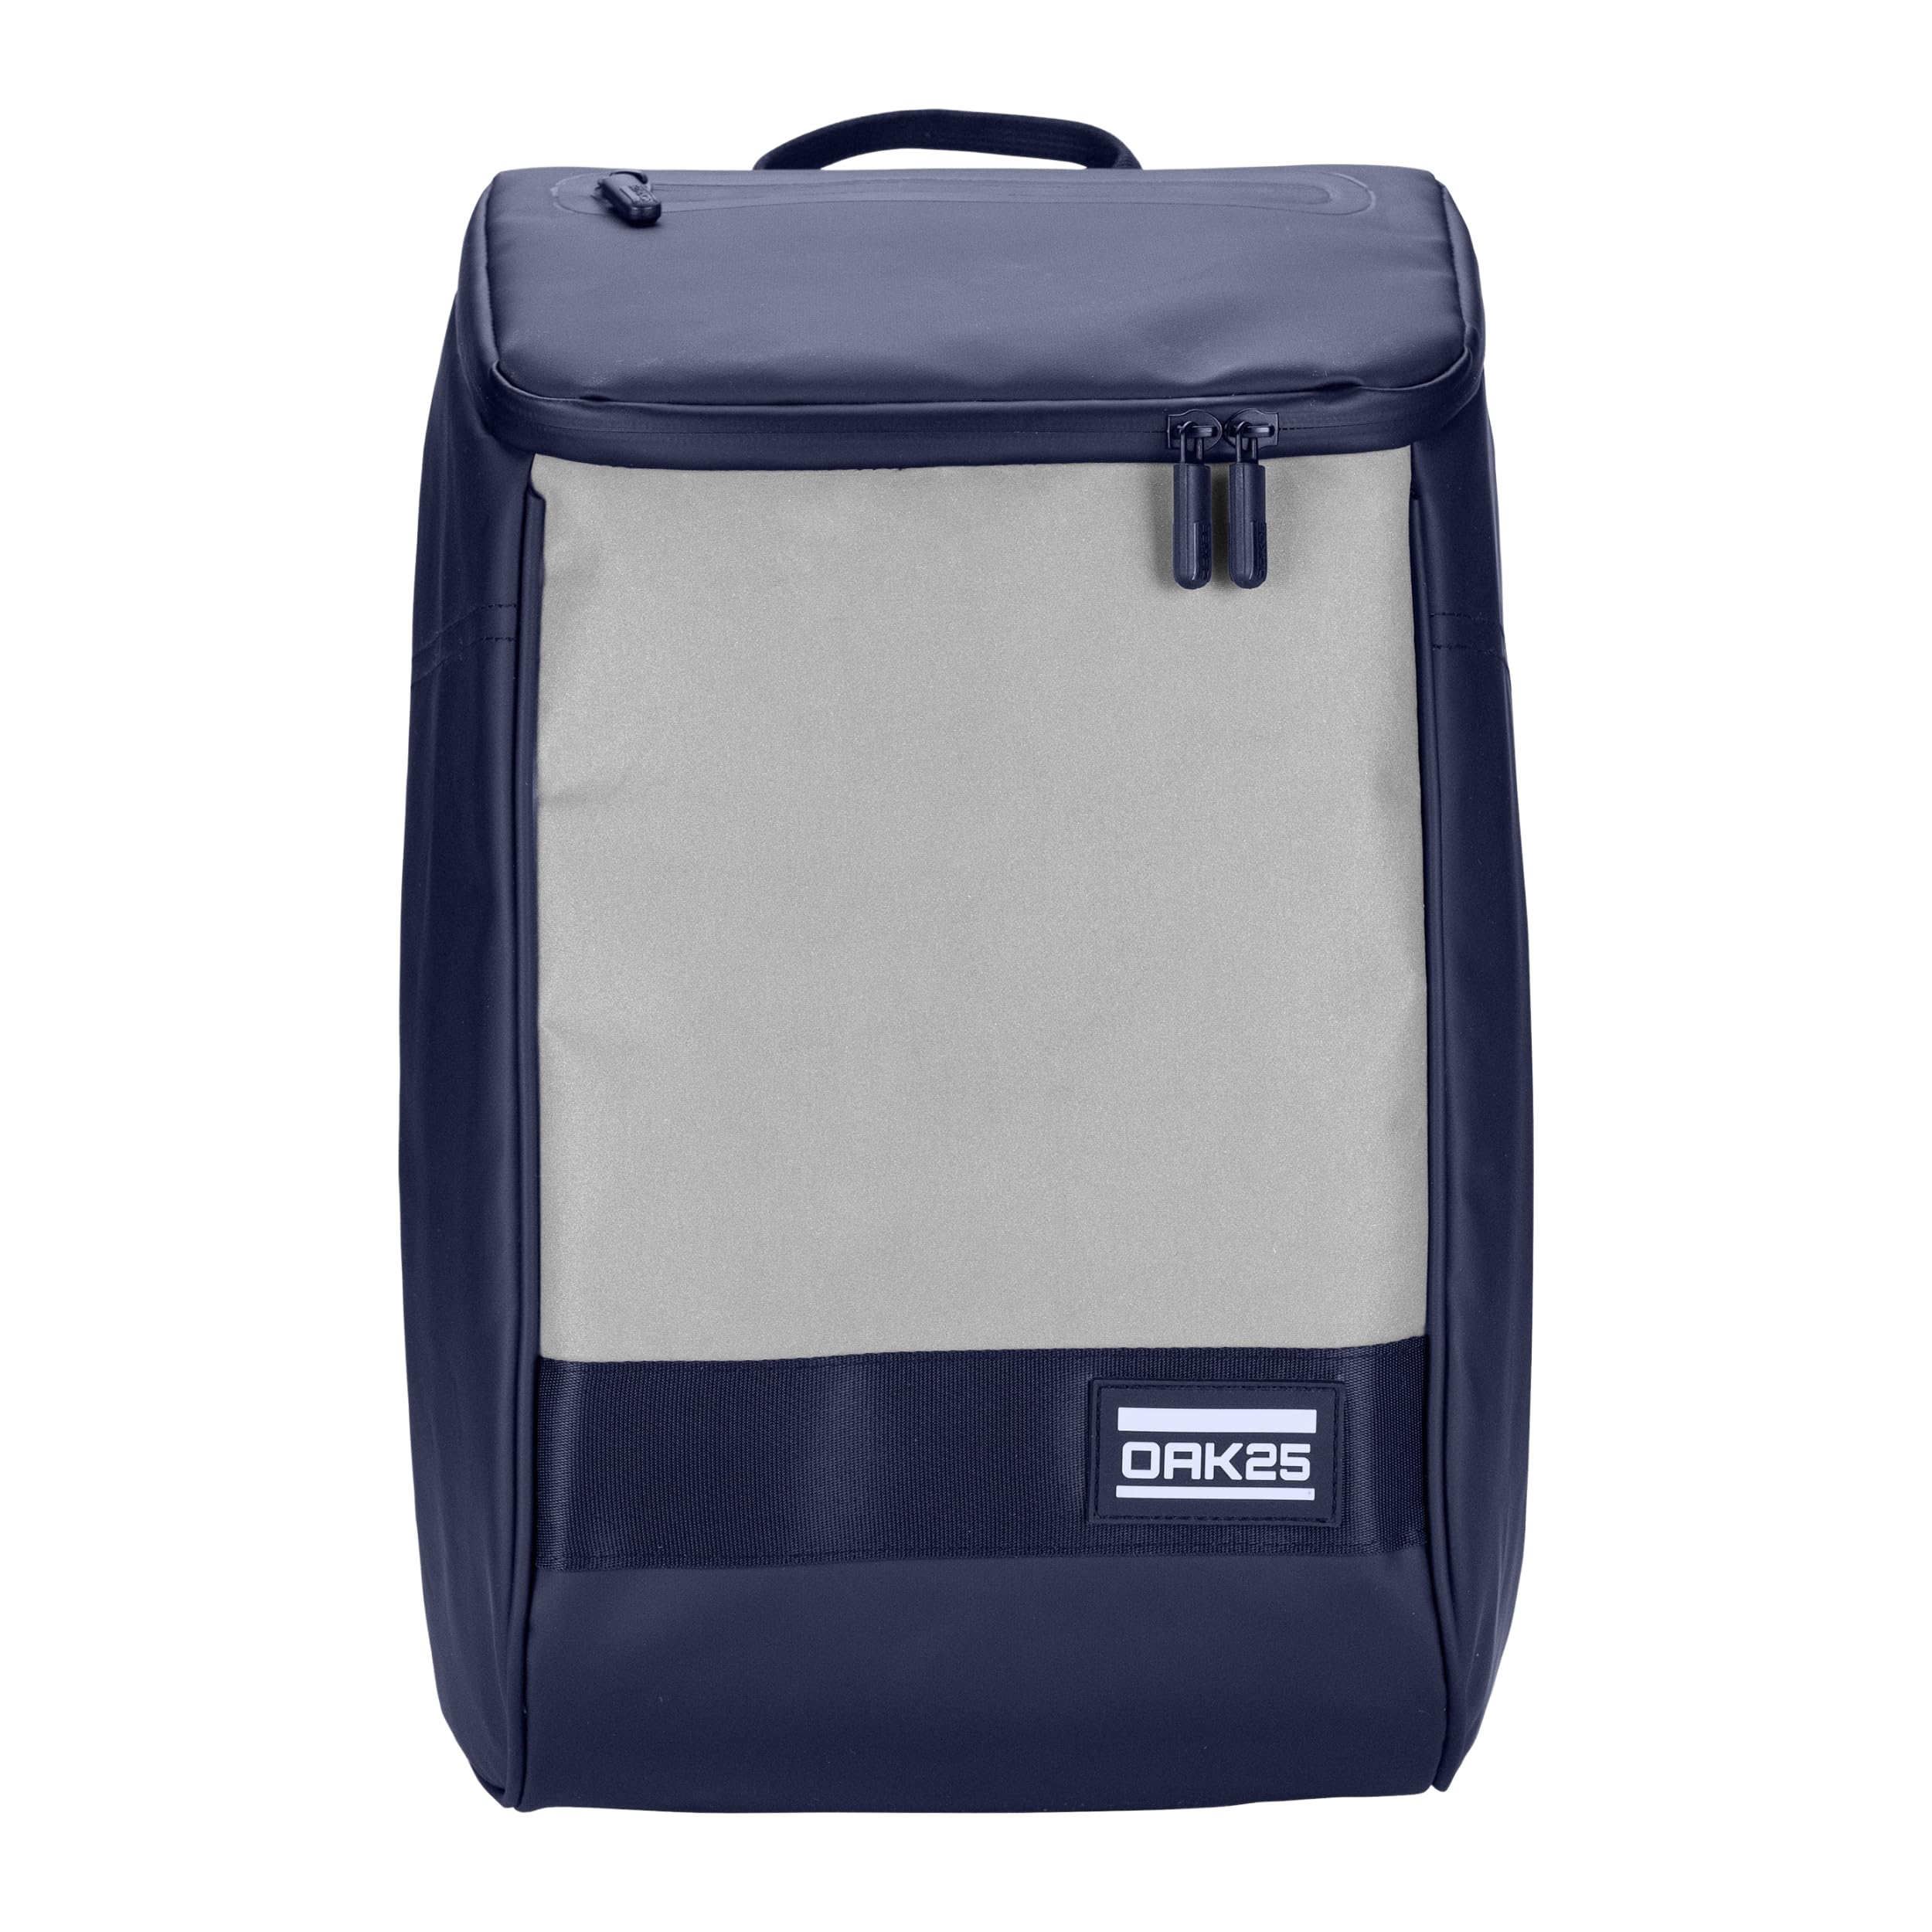 OAK25 Rucksack Damen & Herren Blau - Daybag - Reflektierender Fahrradrucksack - Hohe Sichtbarkeit & Sicherheit - Fahrrad Daypack mit Laptop Fach - Wasserabweisend